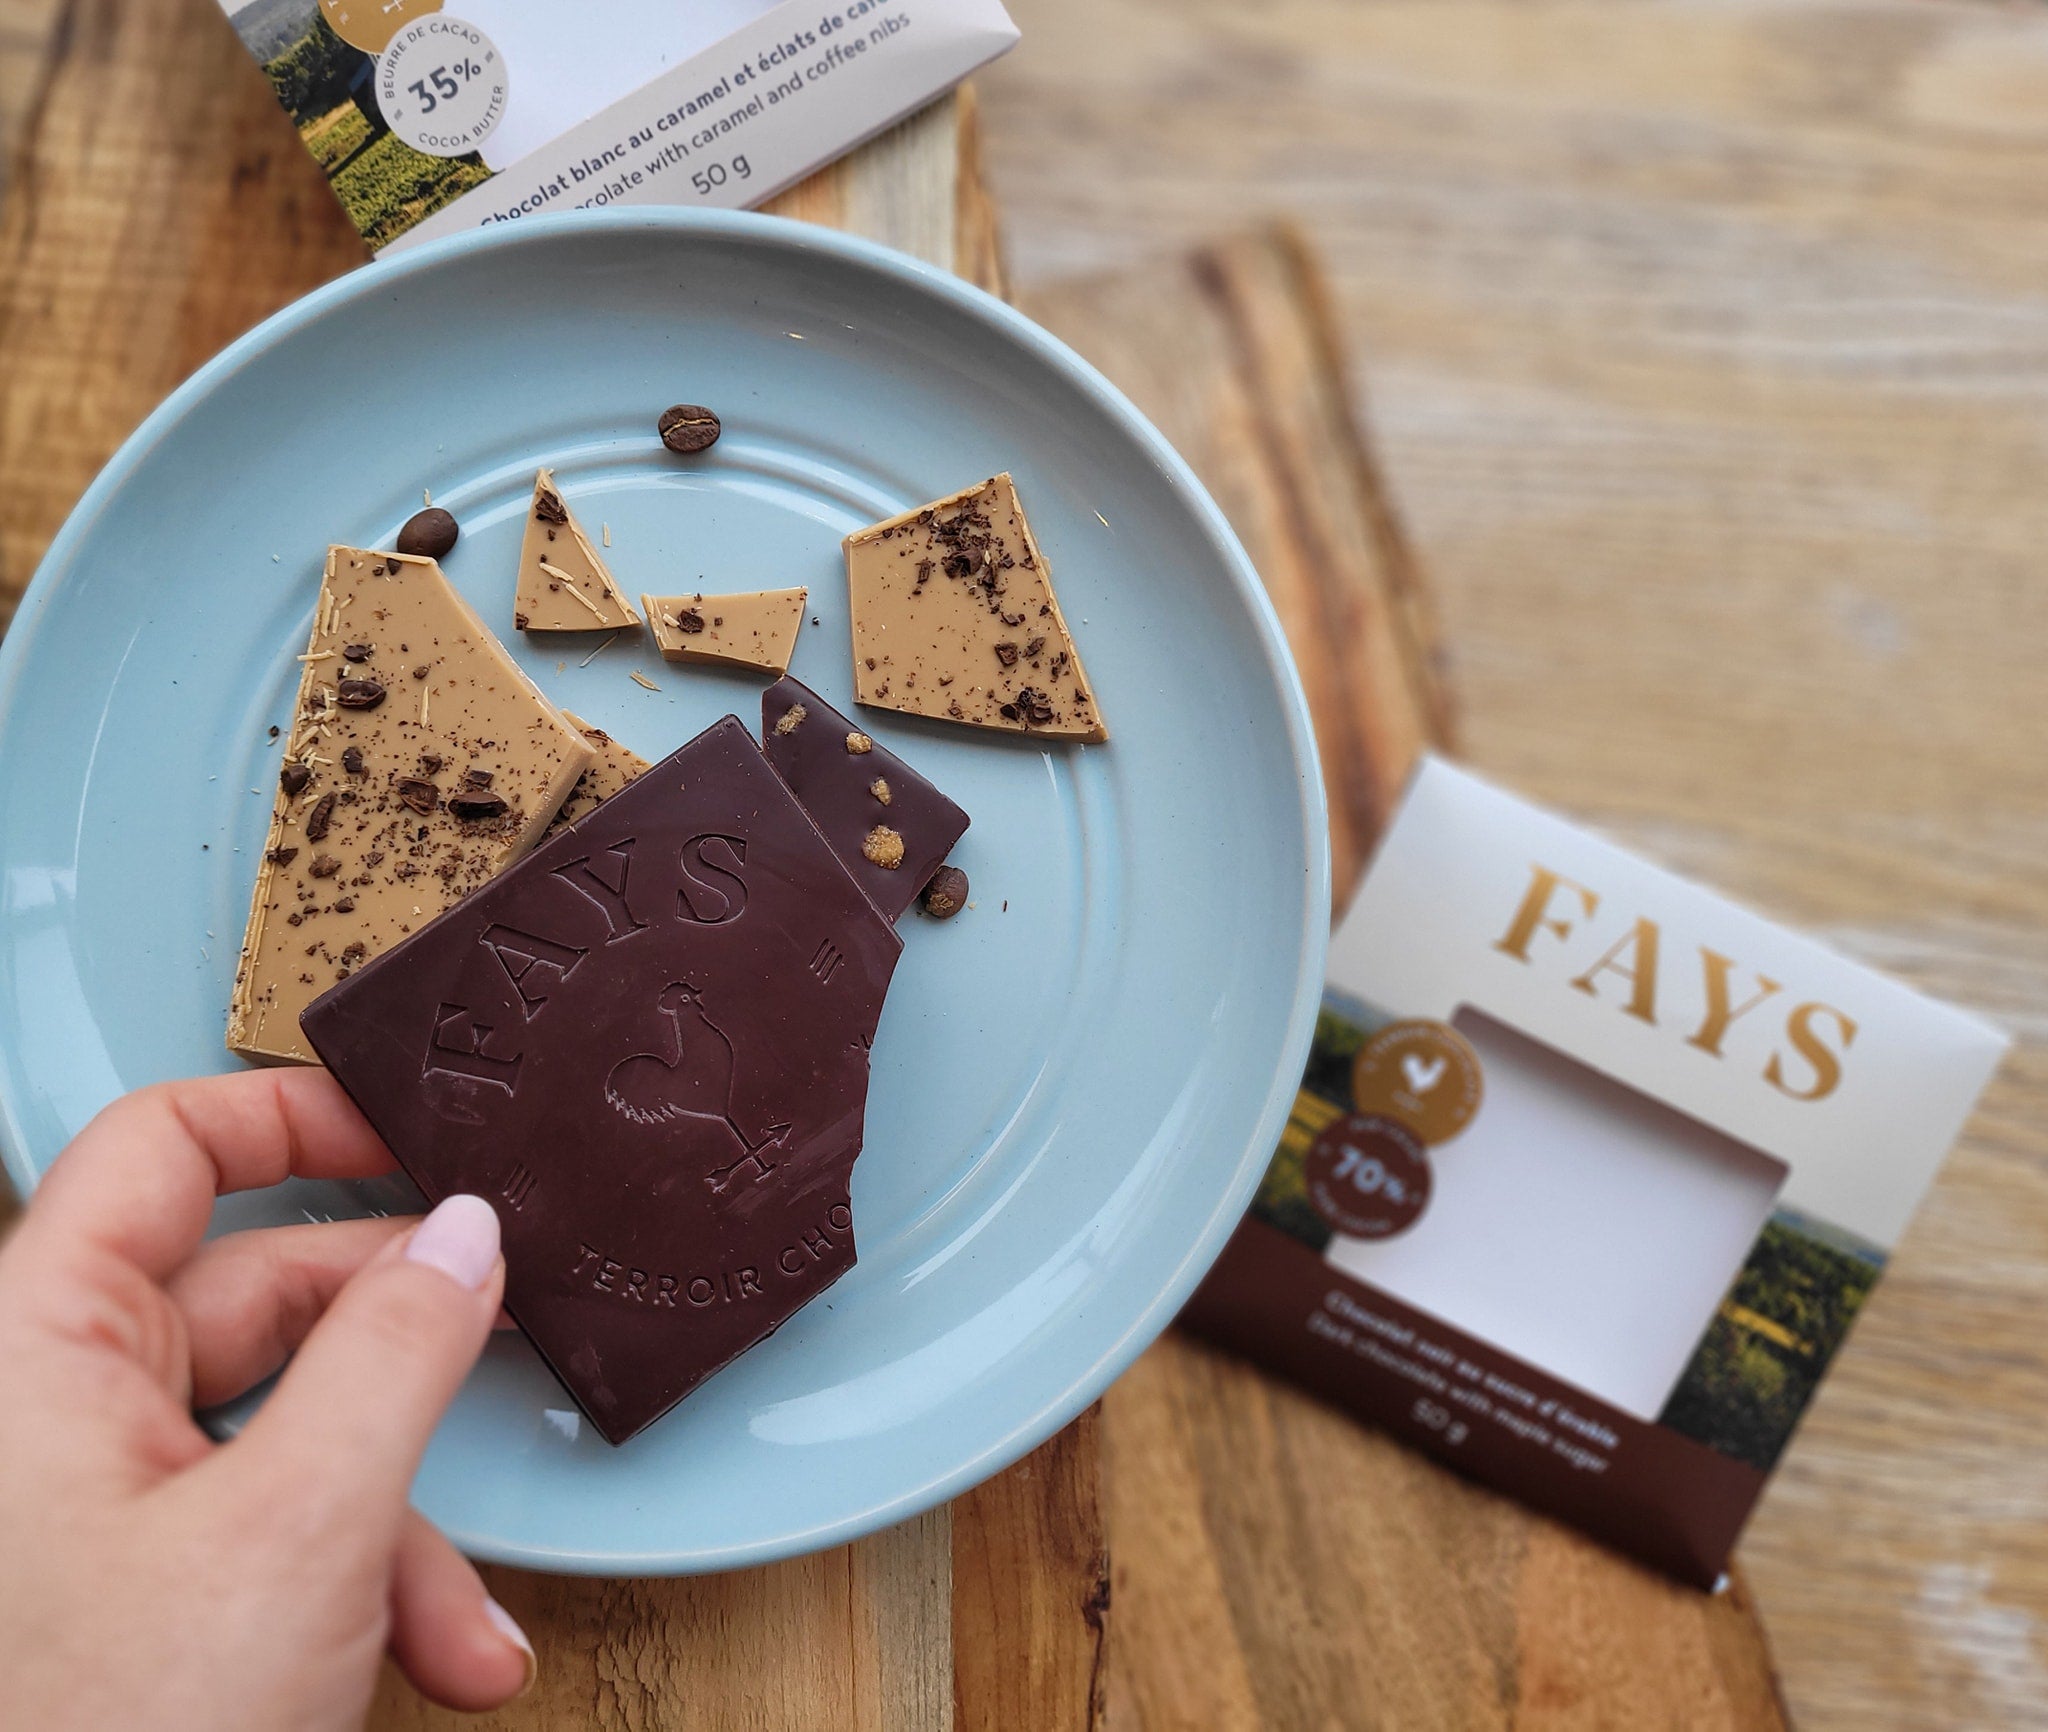 Tablette de chocolat blanc – FAYS, terroir chocolaté